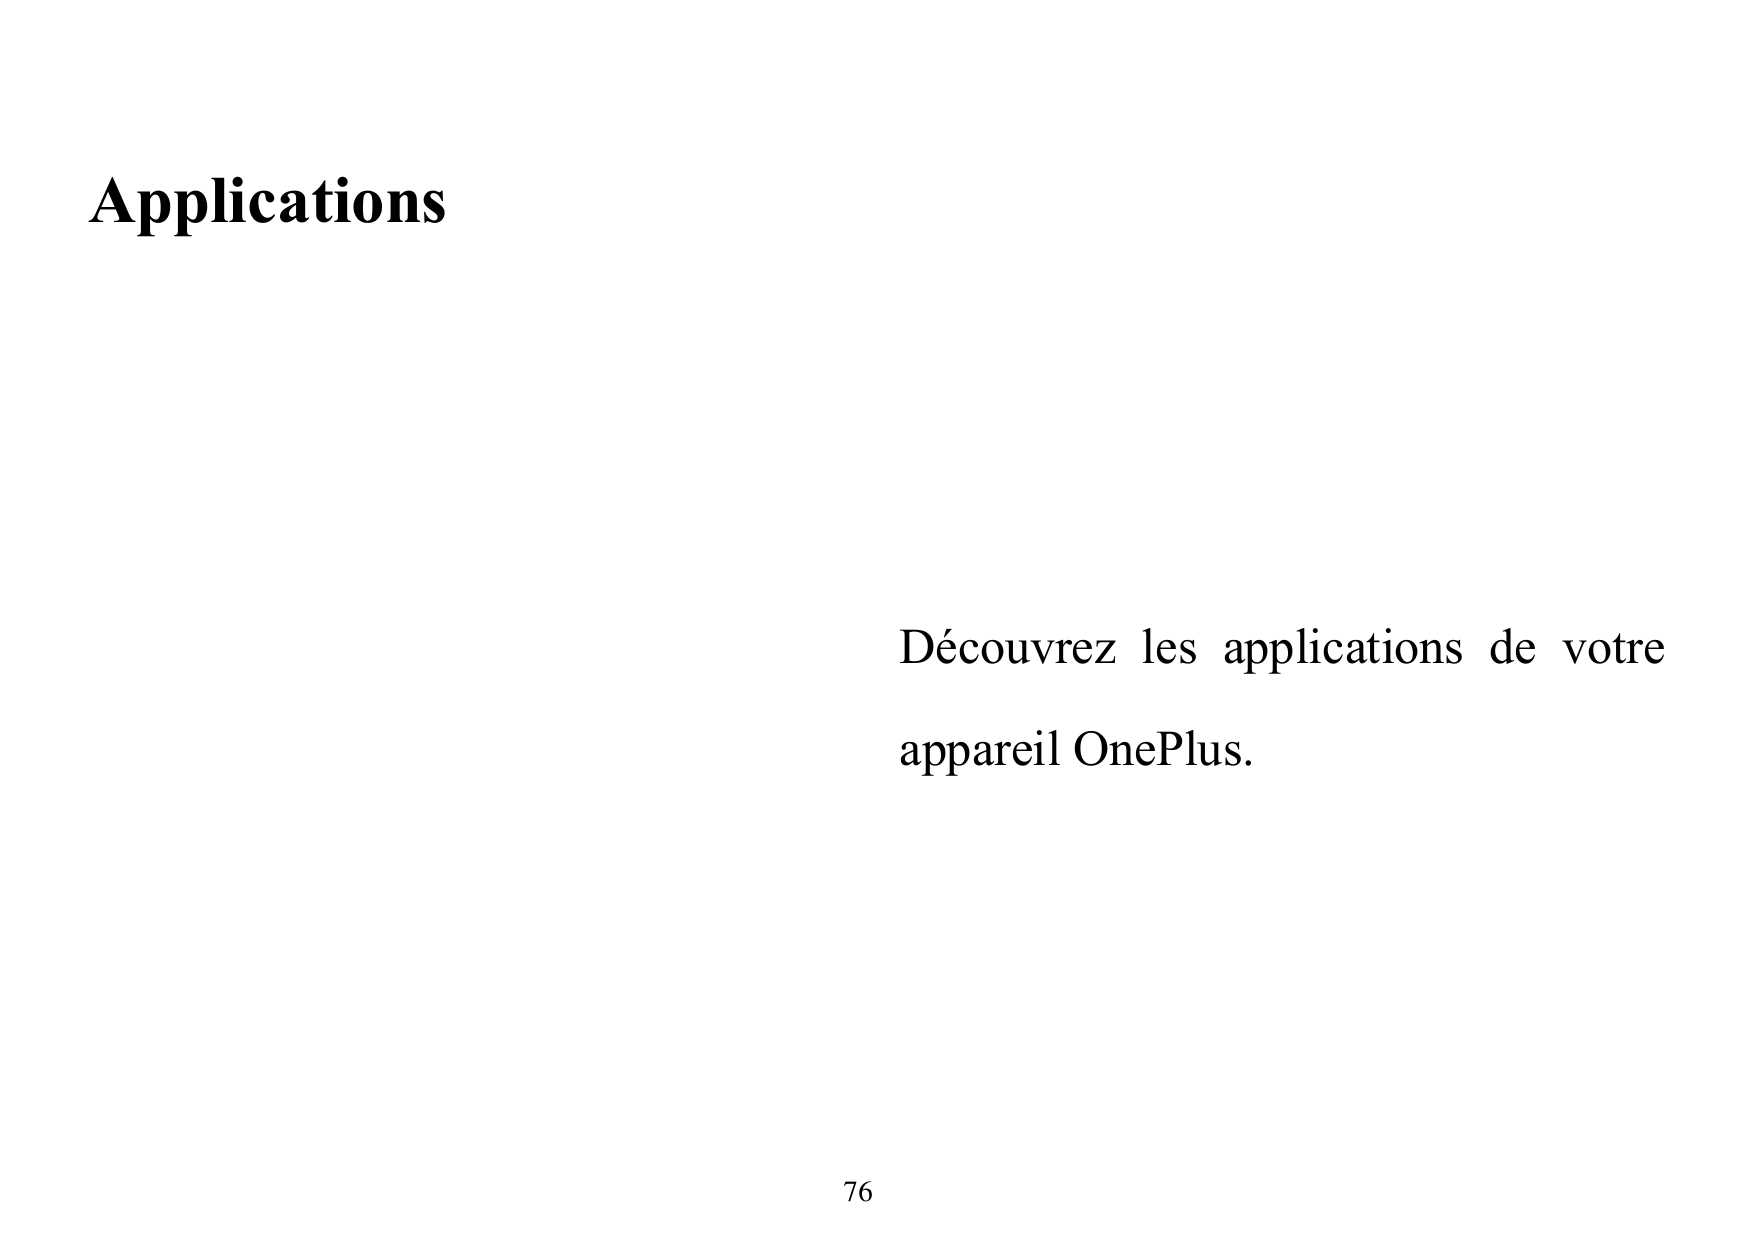 ApplicationsDécouvrez les applications de votreappareil OnePlus.76